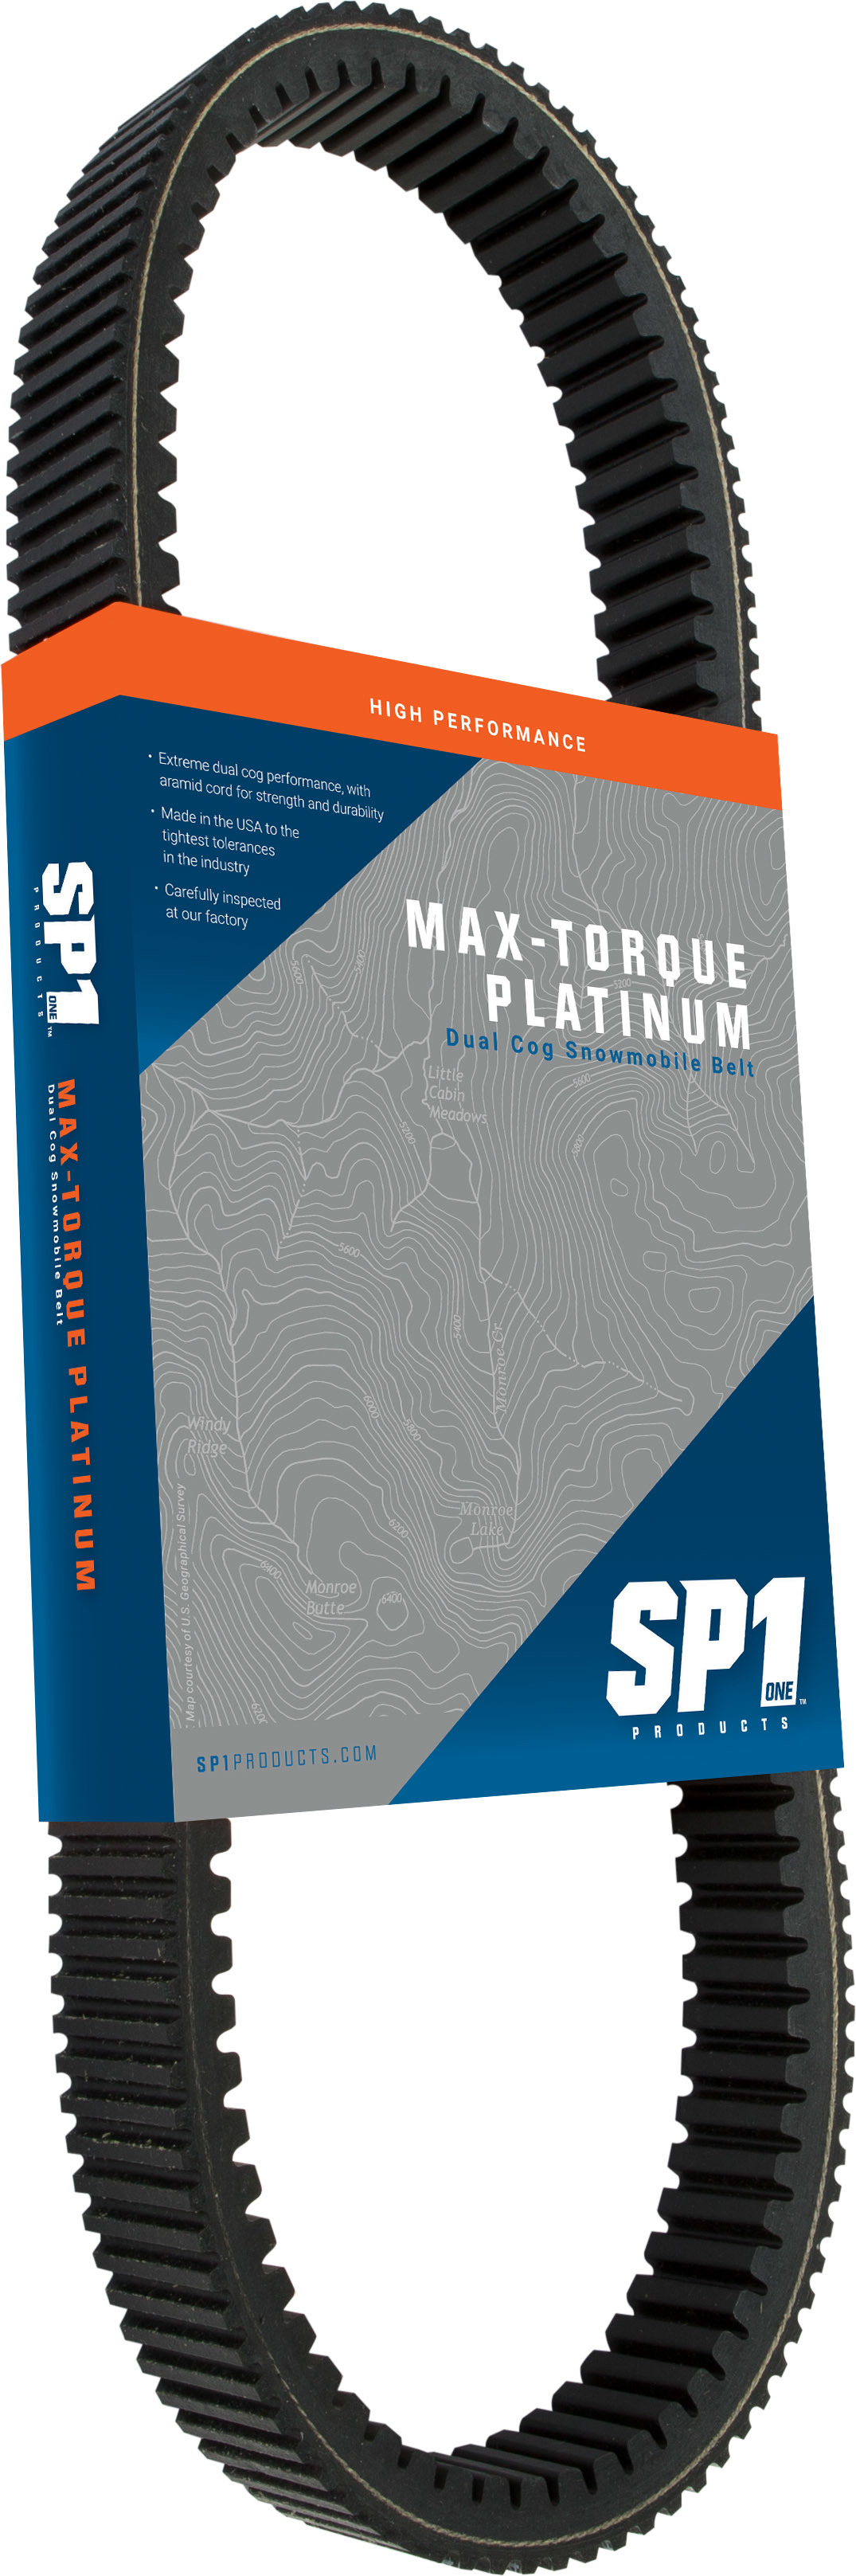 Sp1 - Max-torque Platinum Belt 43 5/8" X 1 15/32" - 47-6076